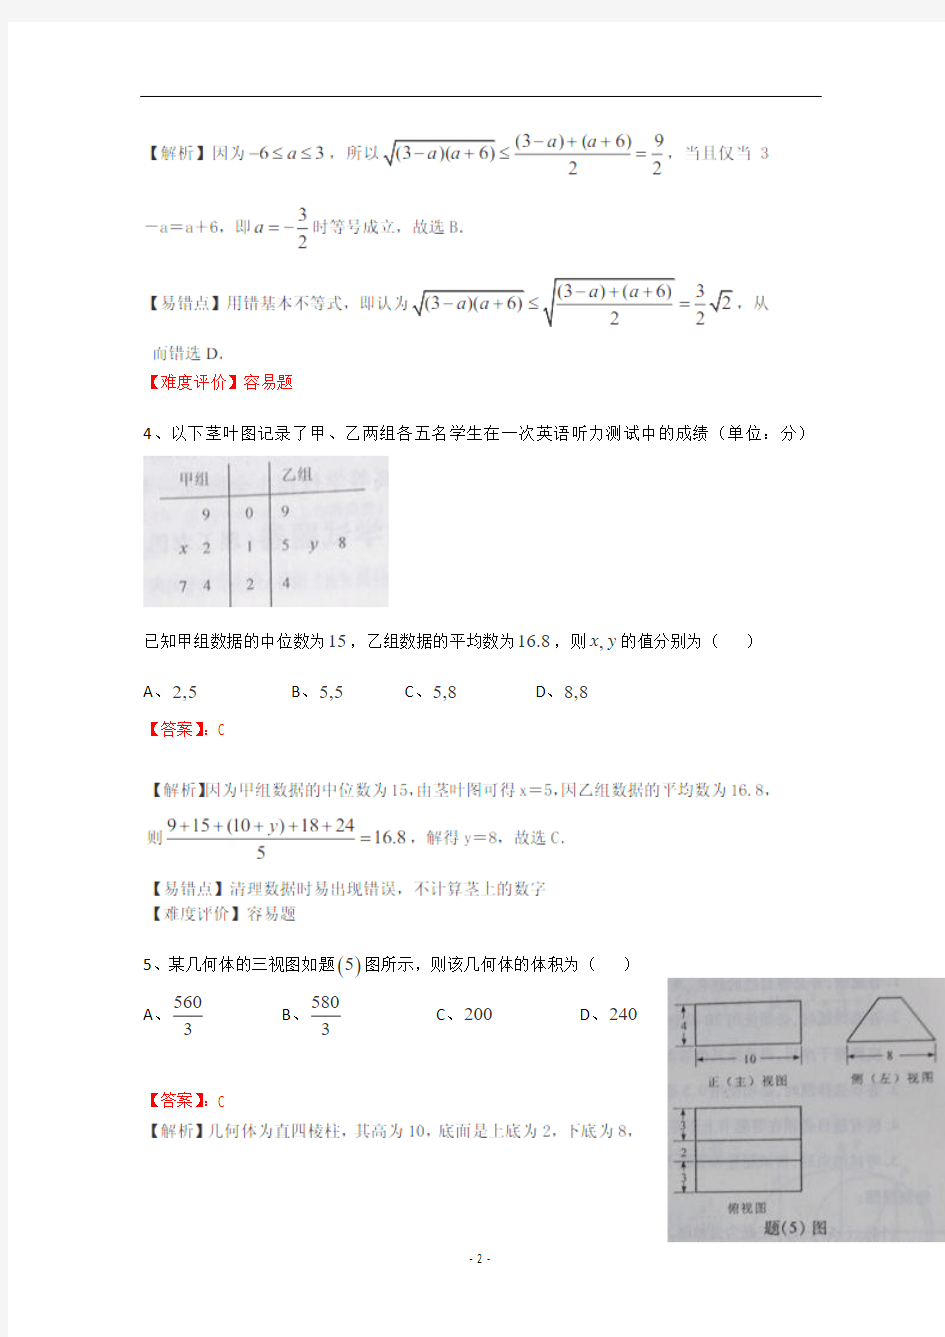 2013年高考真题——理科数学(重庆卷)解析版